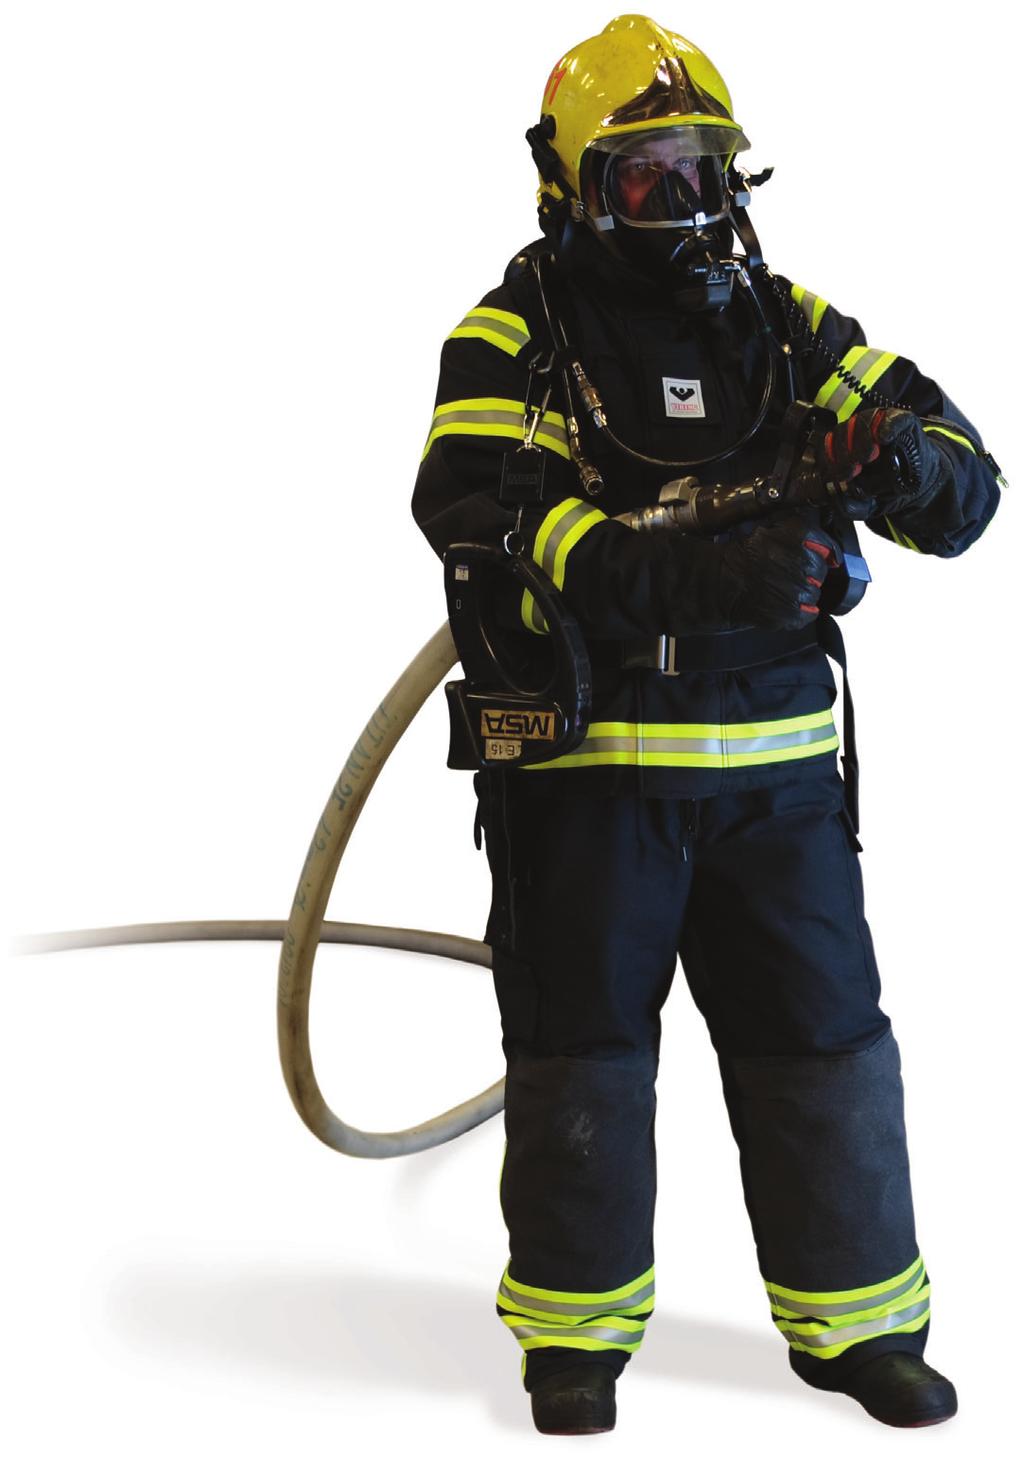 Lämpökamera palomies voi etsiä palavaa kohdetta ja pelastettavia ihmisiä savussa ja pimeydessä lämpökameran avulla. Paineilmalaite Palomies hengittää ilmaa suojamaskin kautta.